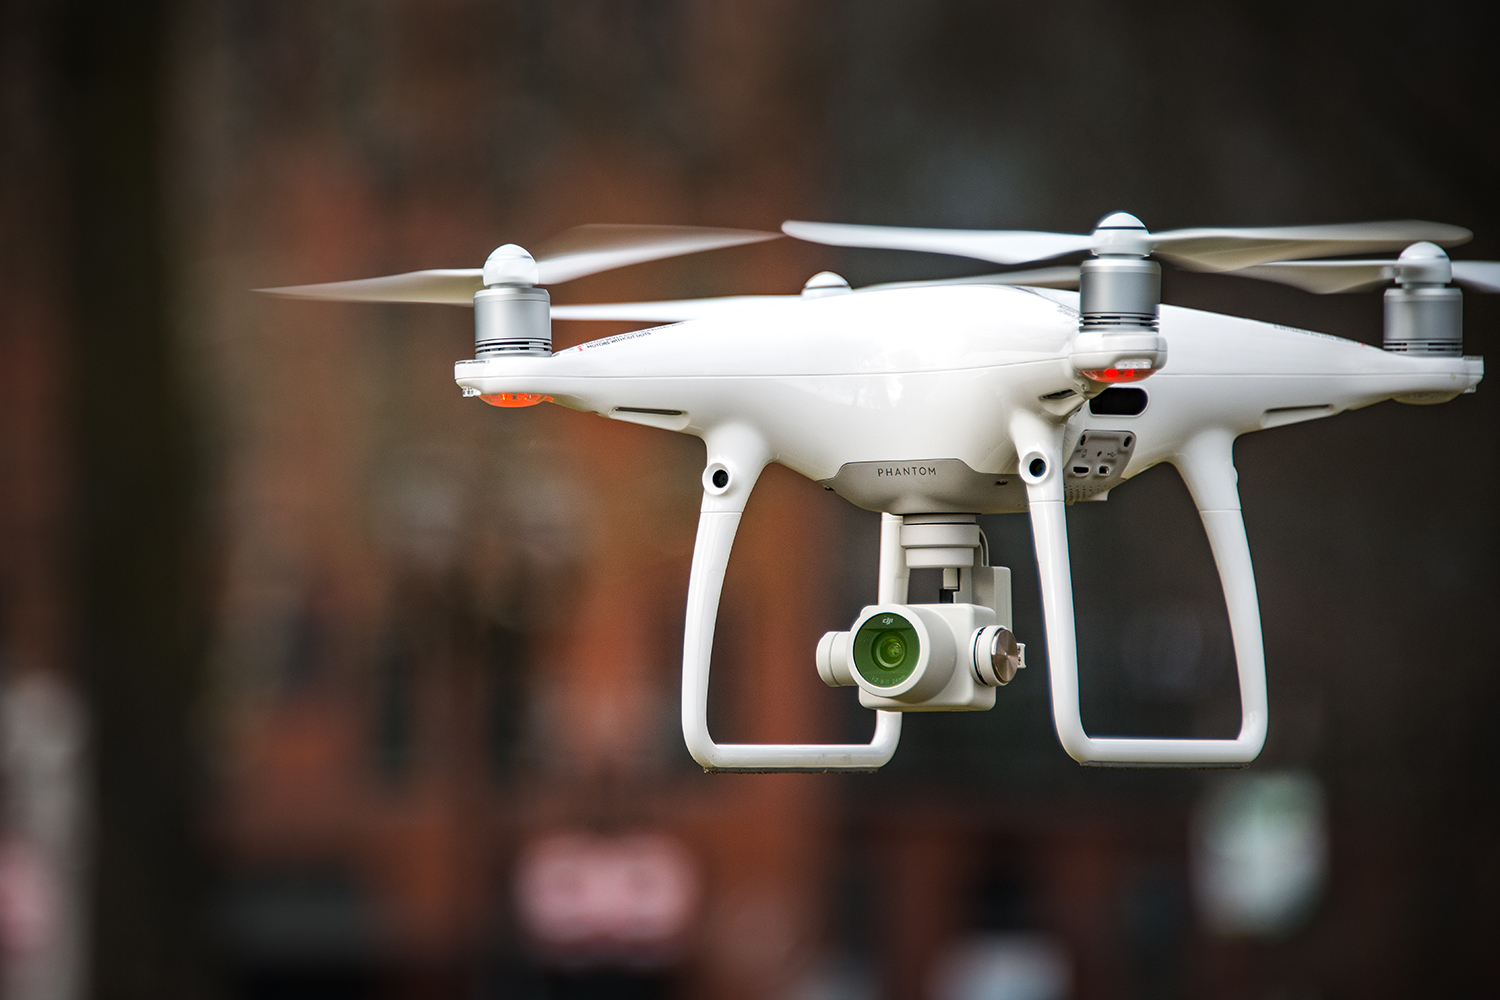 DJI Phantom 4 Pro Quadcopter Review: Our Favorite Drone | Digital